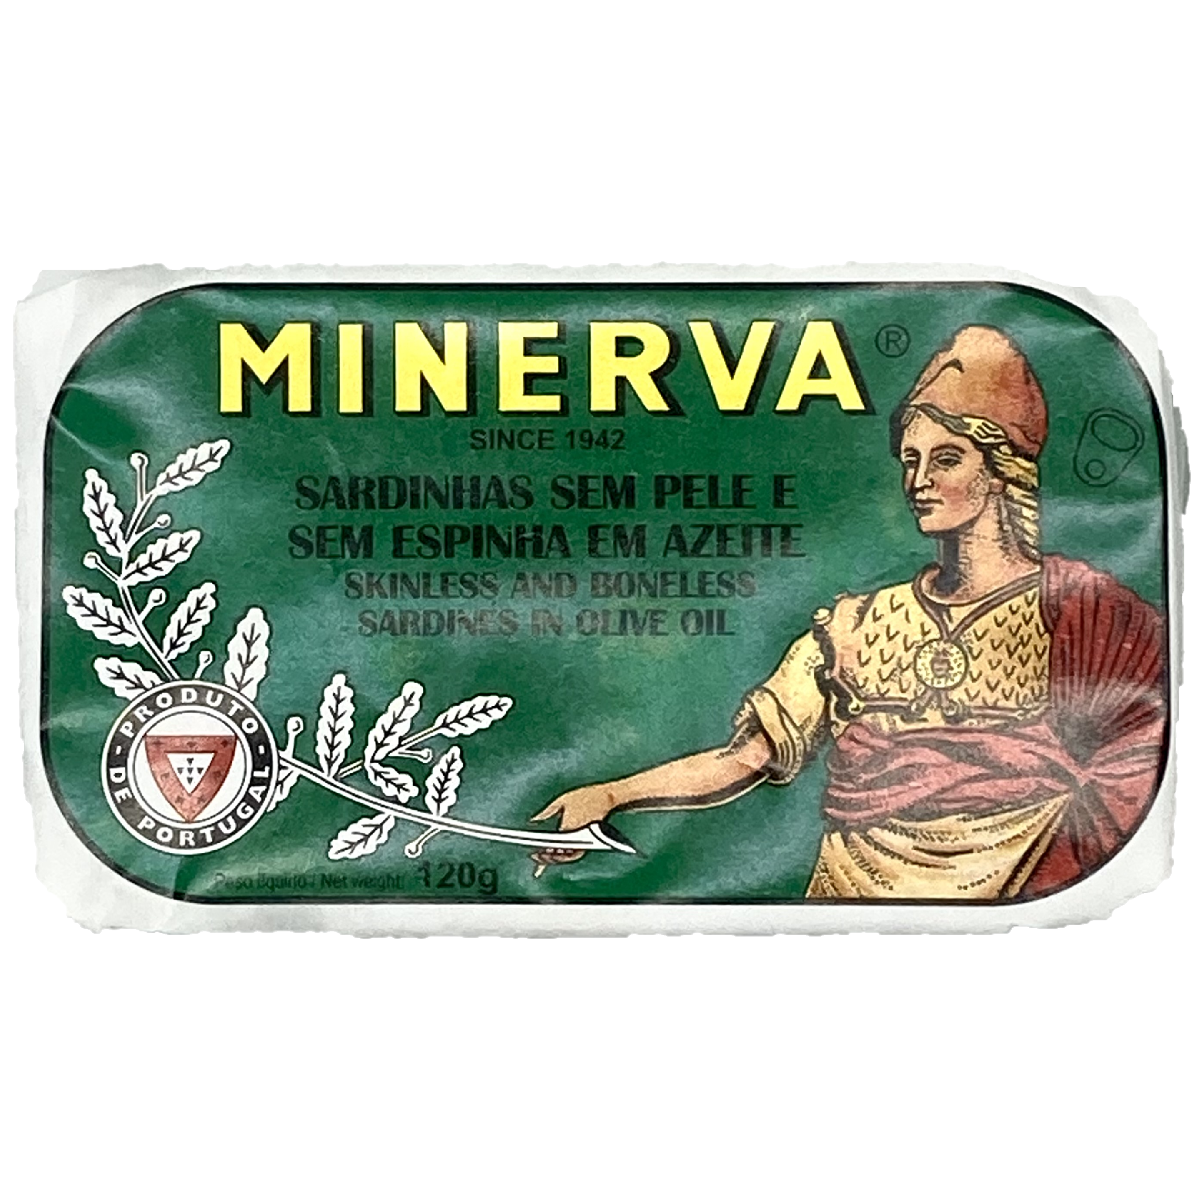 Minerva Sardines in Olive Oil 120g